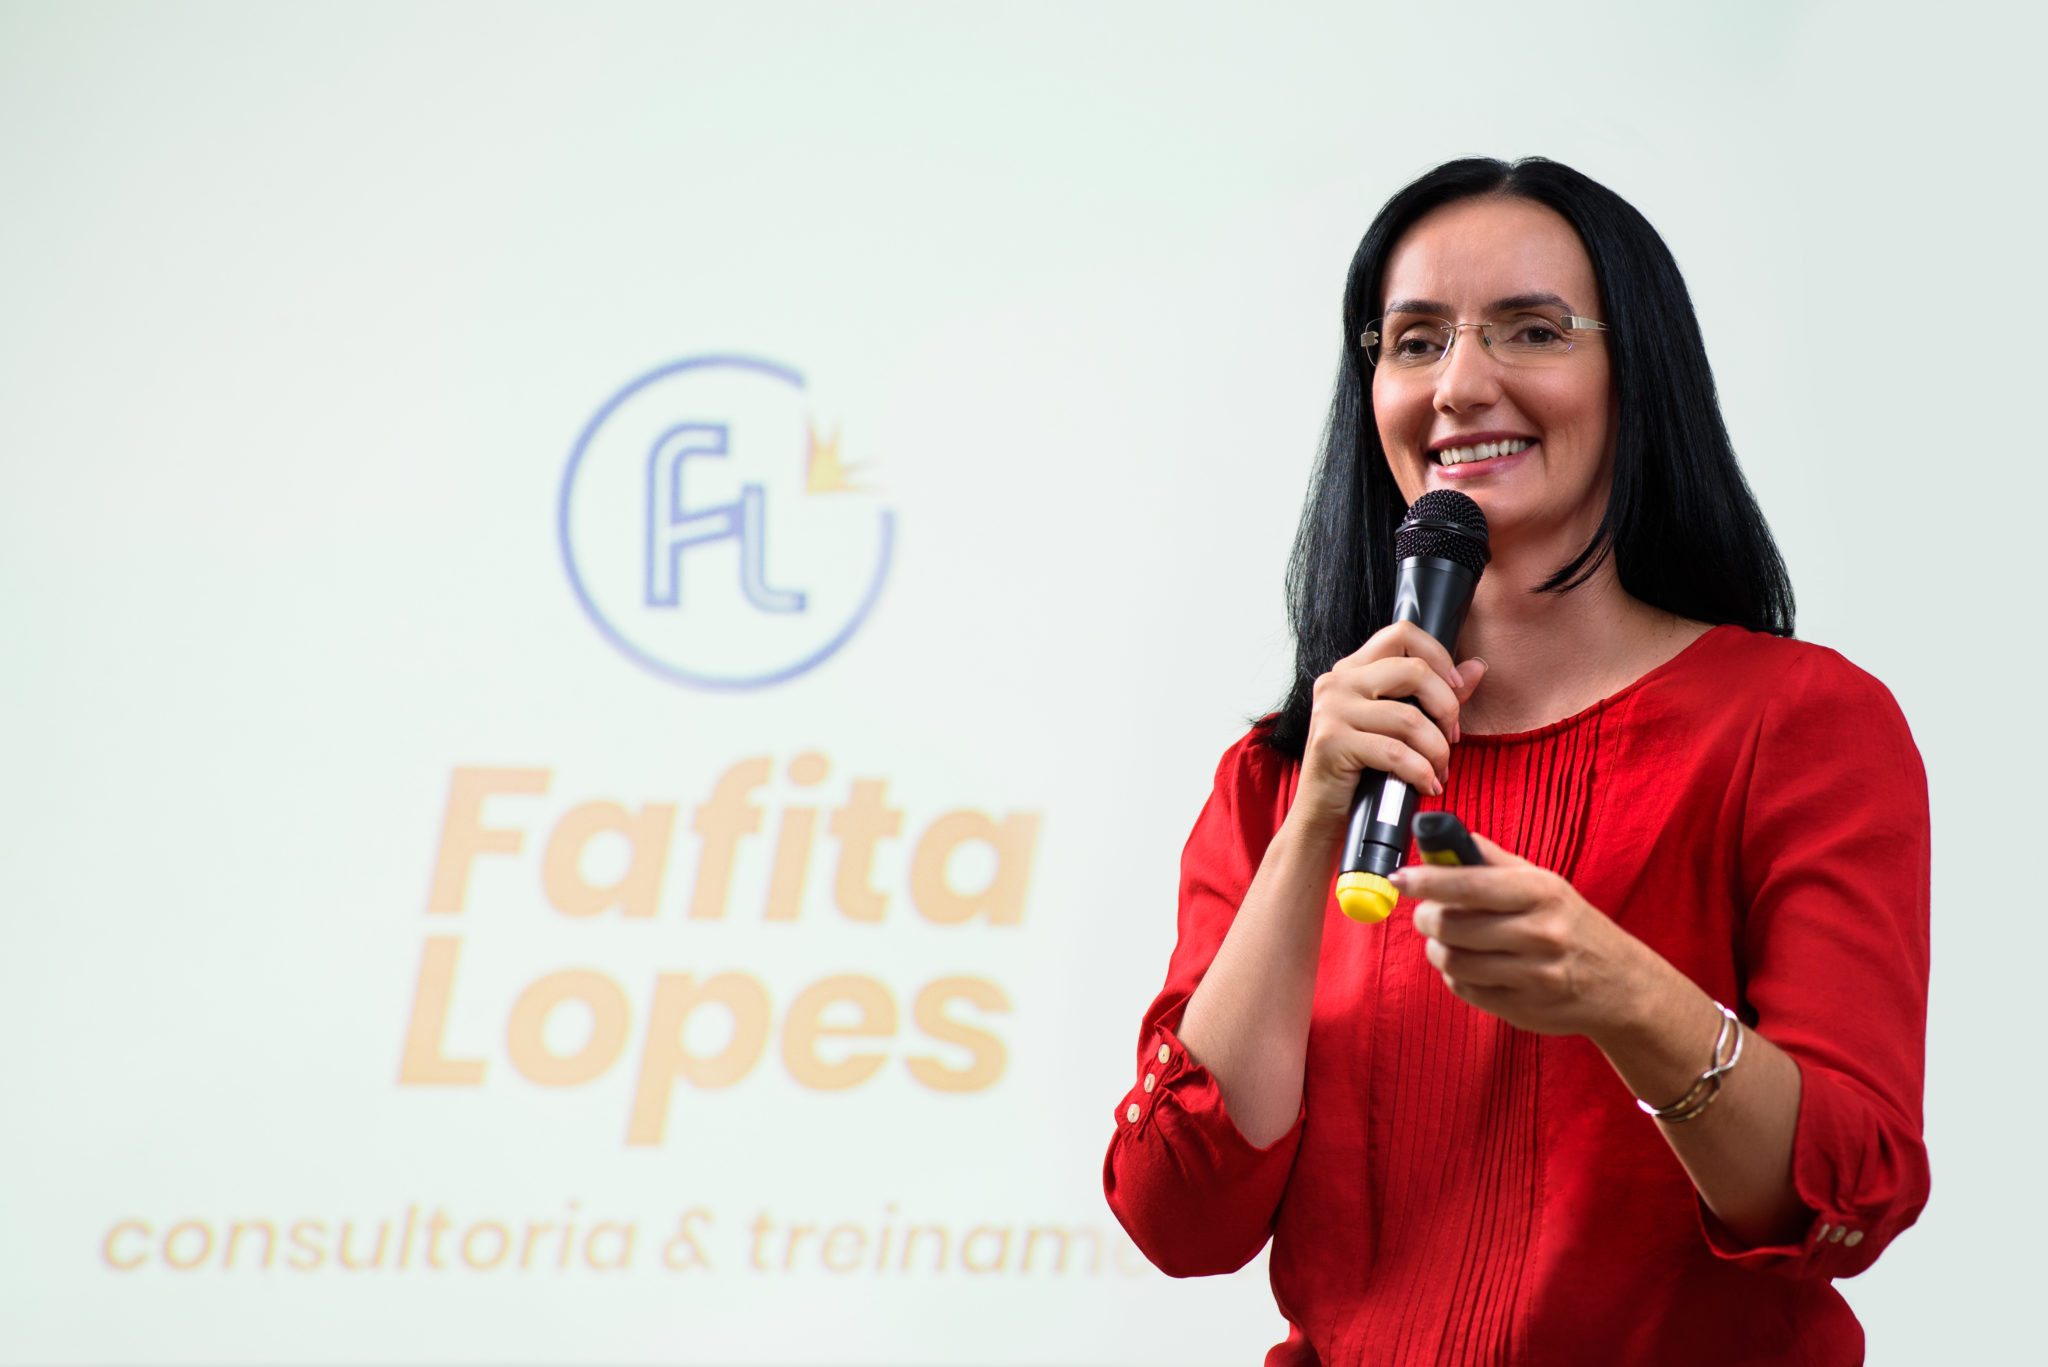 Fafita Lopes-2